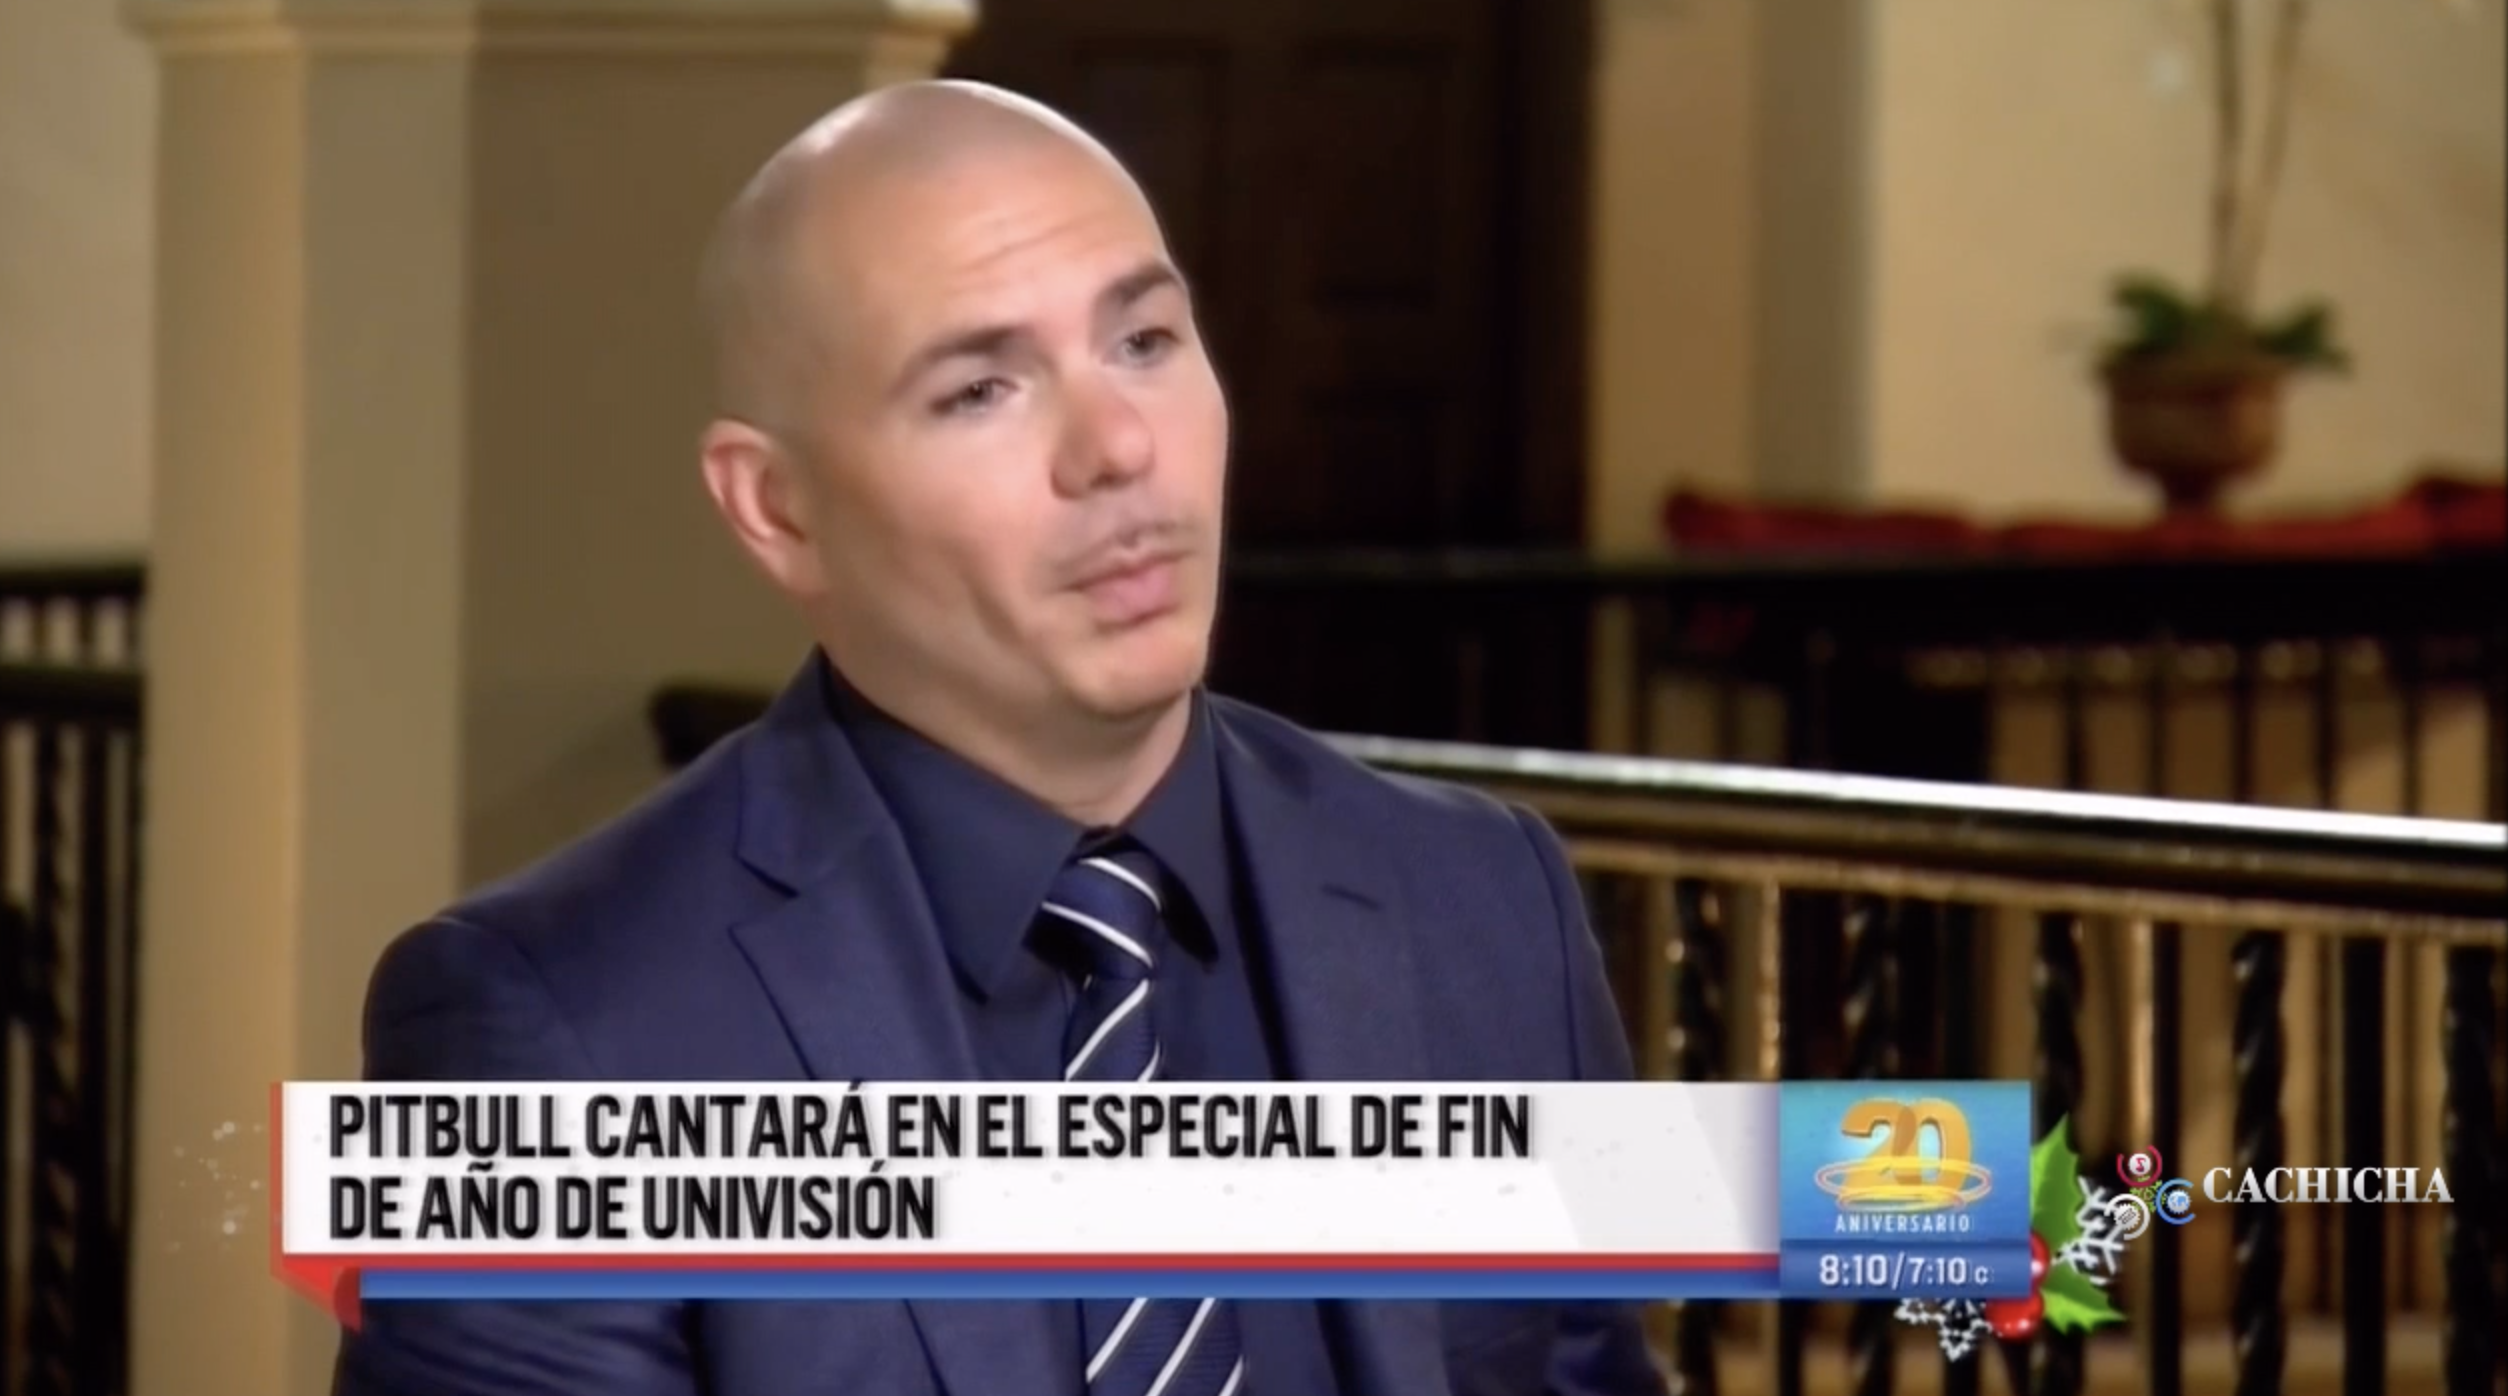 Pitbull Cantará En El Especial De Fin De Año De Univision En Florida